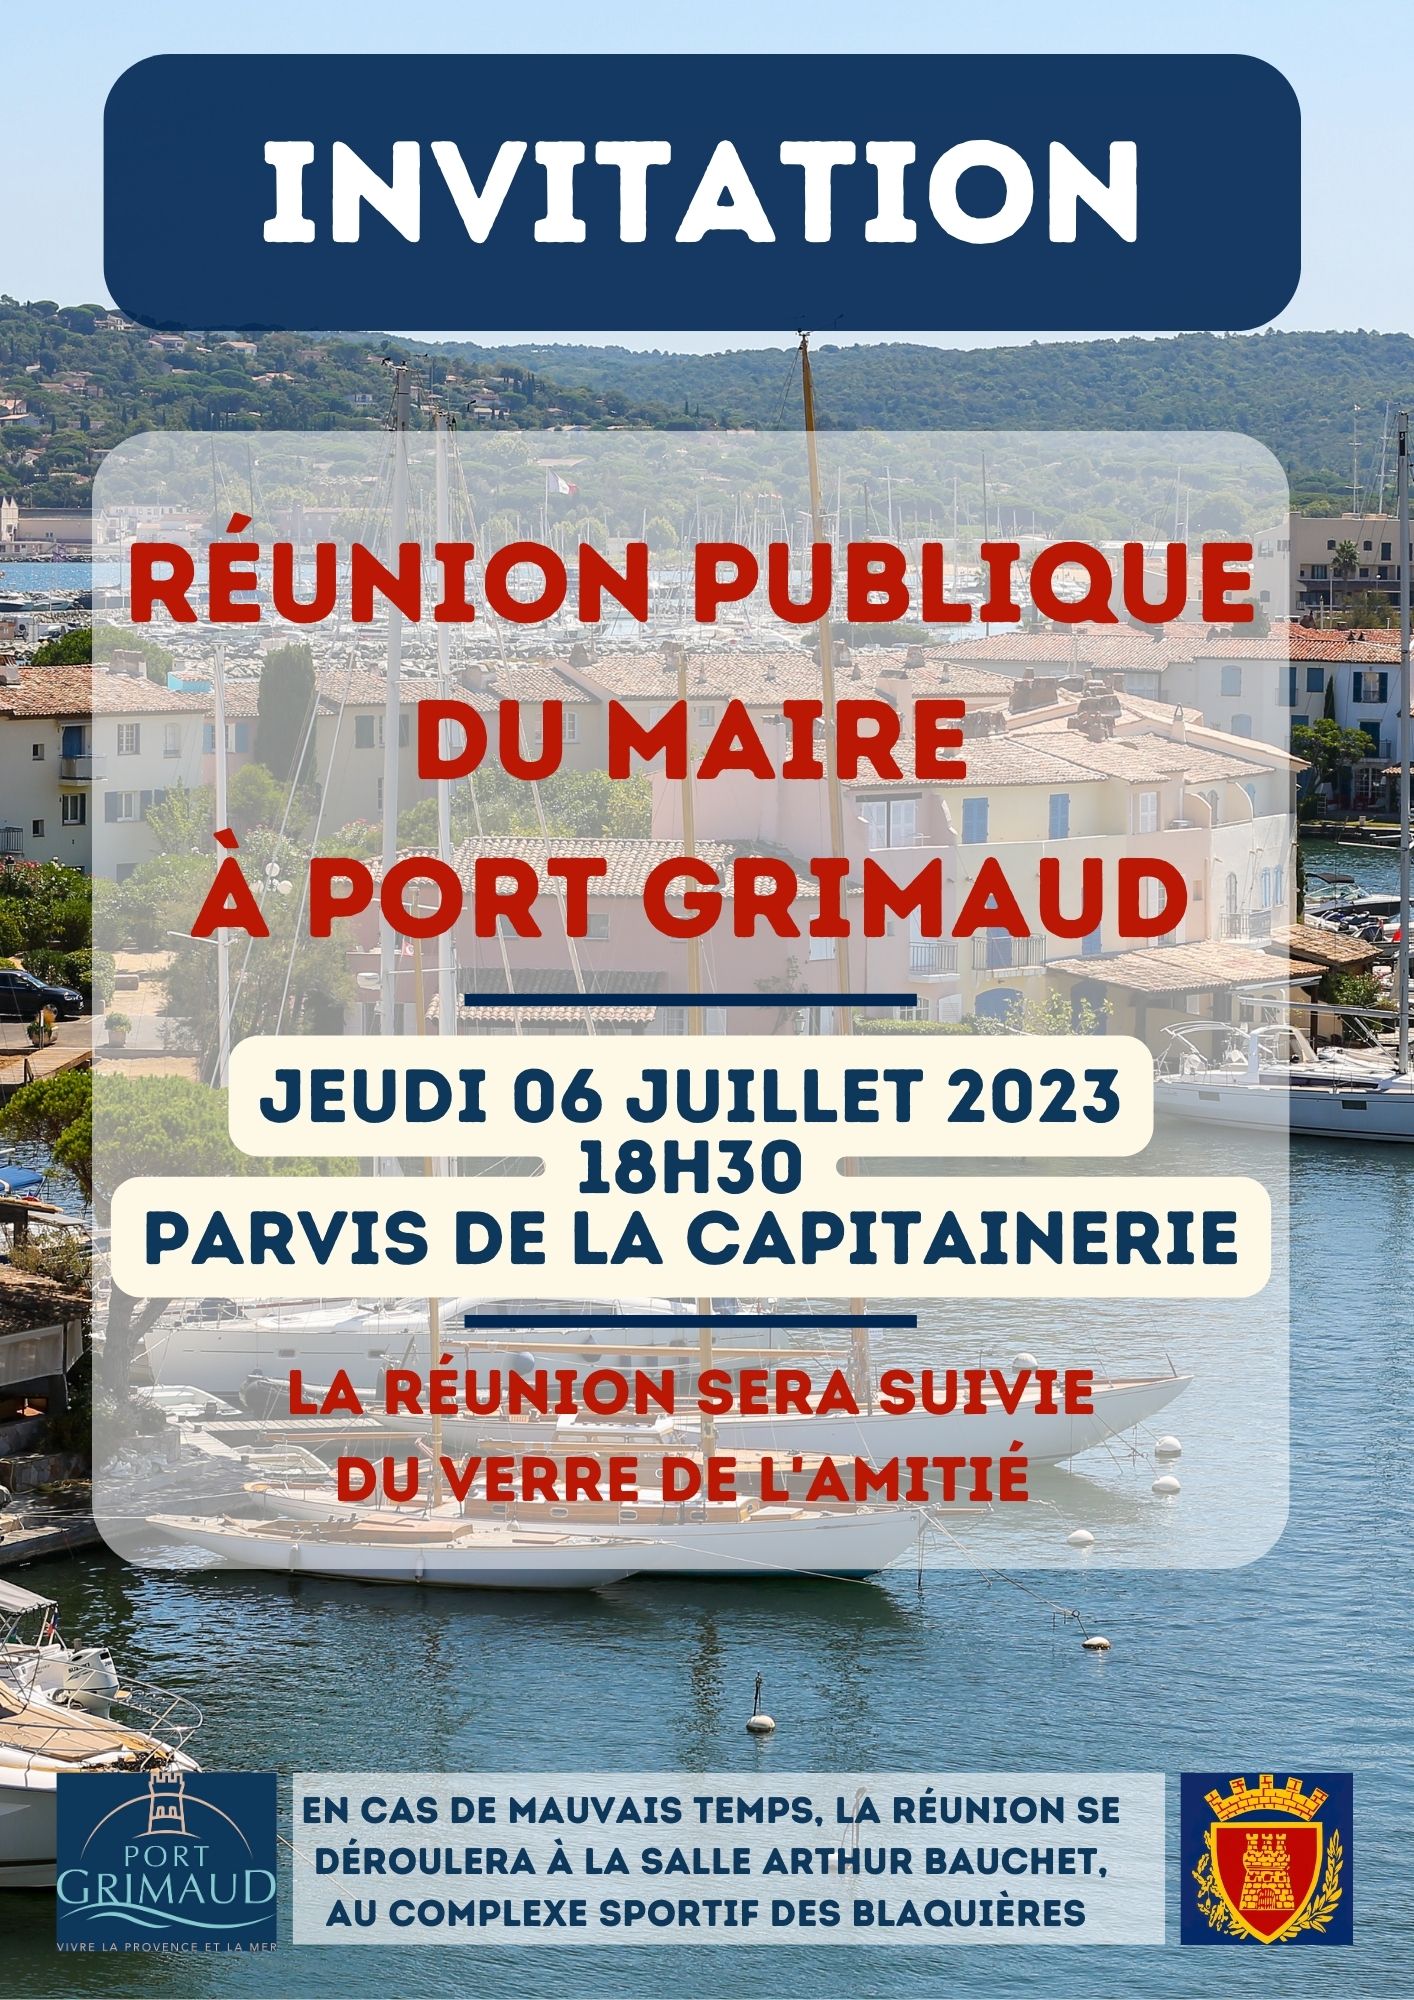 Jeudi 06 juillet 2023 - Réunion publique du Maire à Port Grimaud